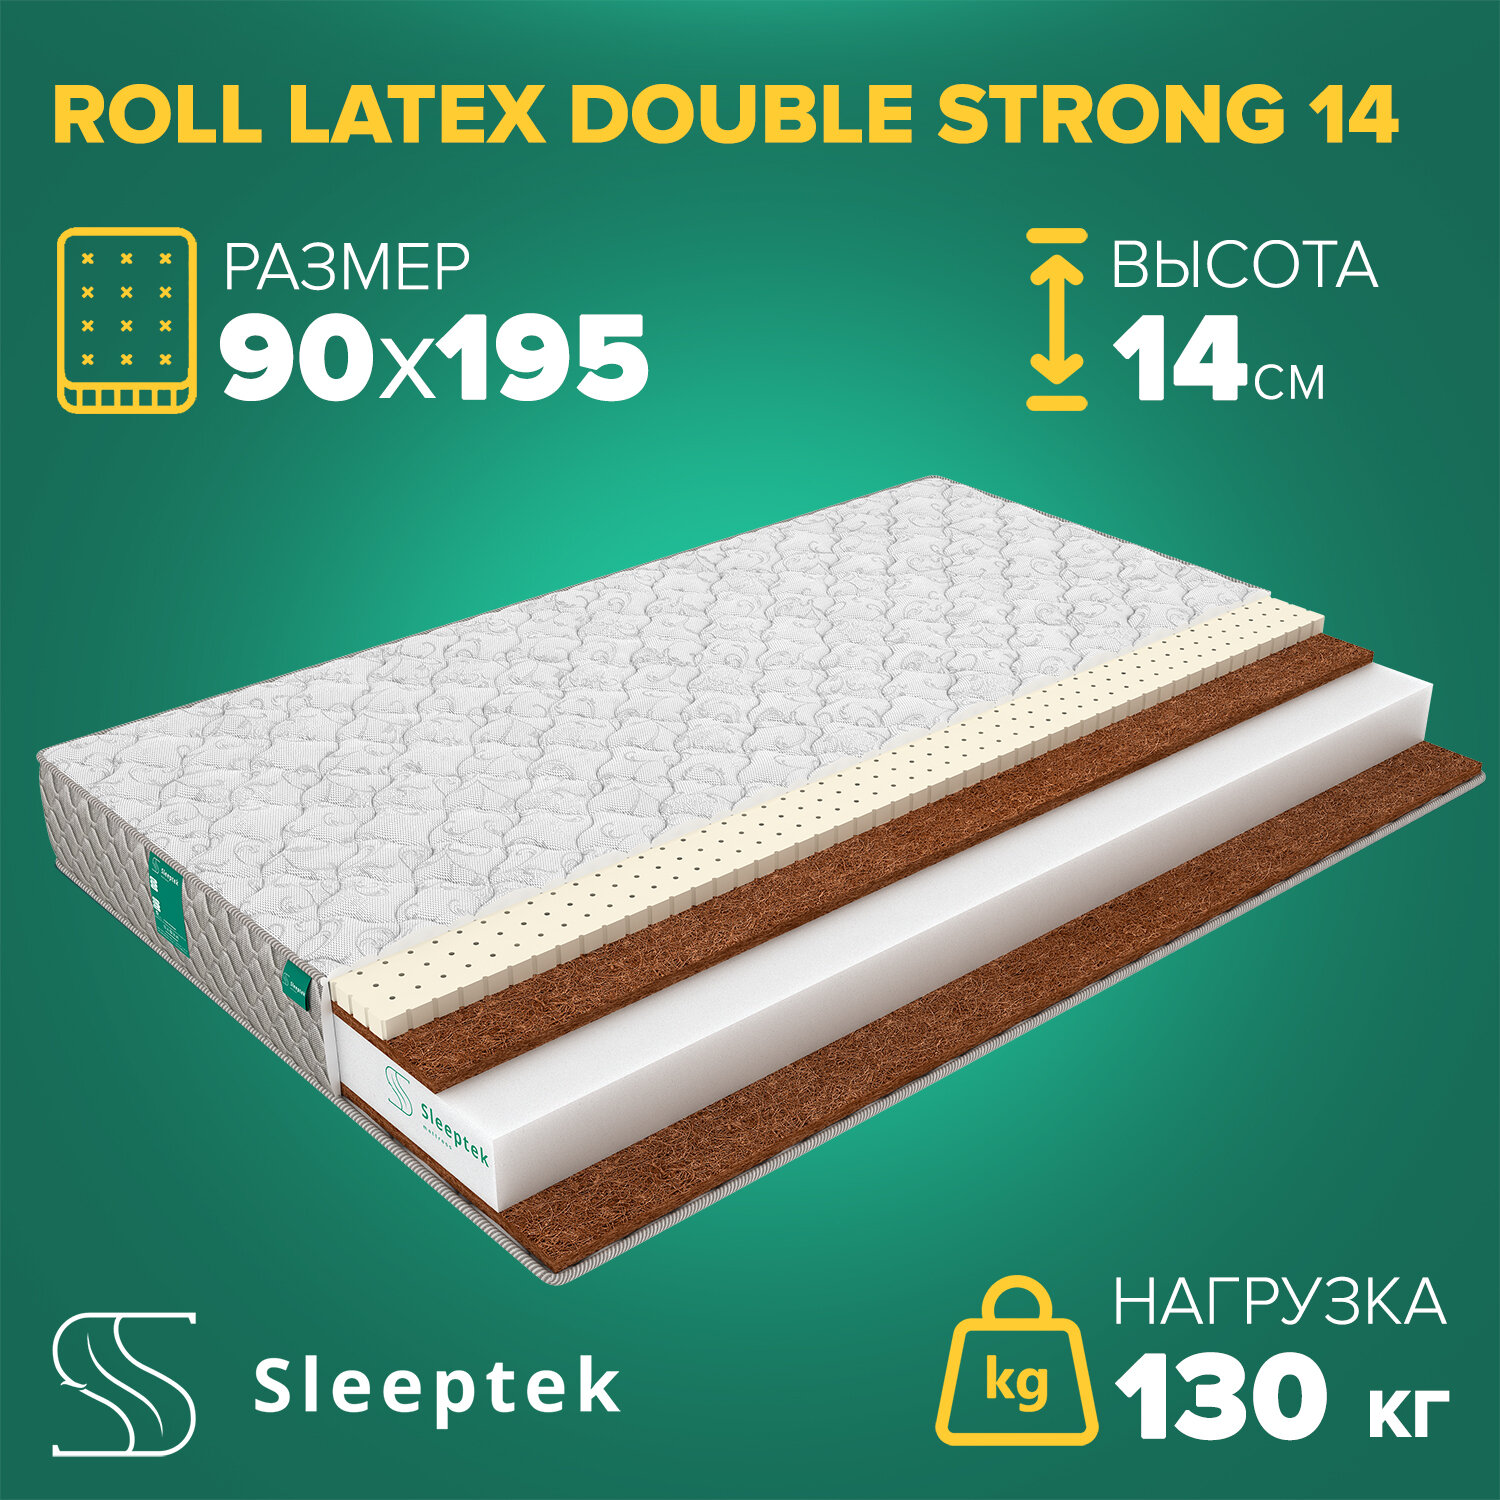 Матрас Sleeptek Roll Latex DoubleStrong 14 90х195